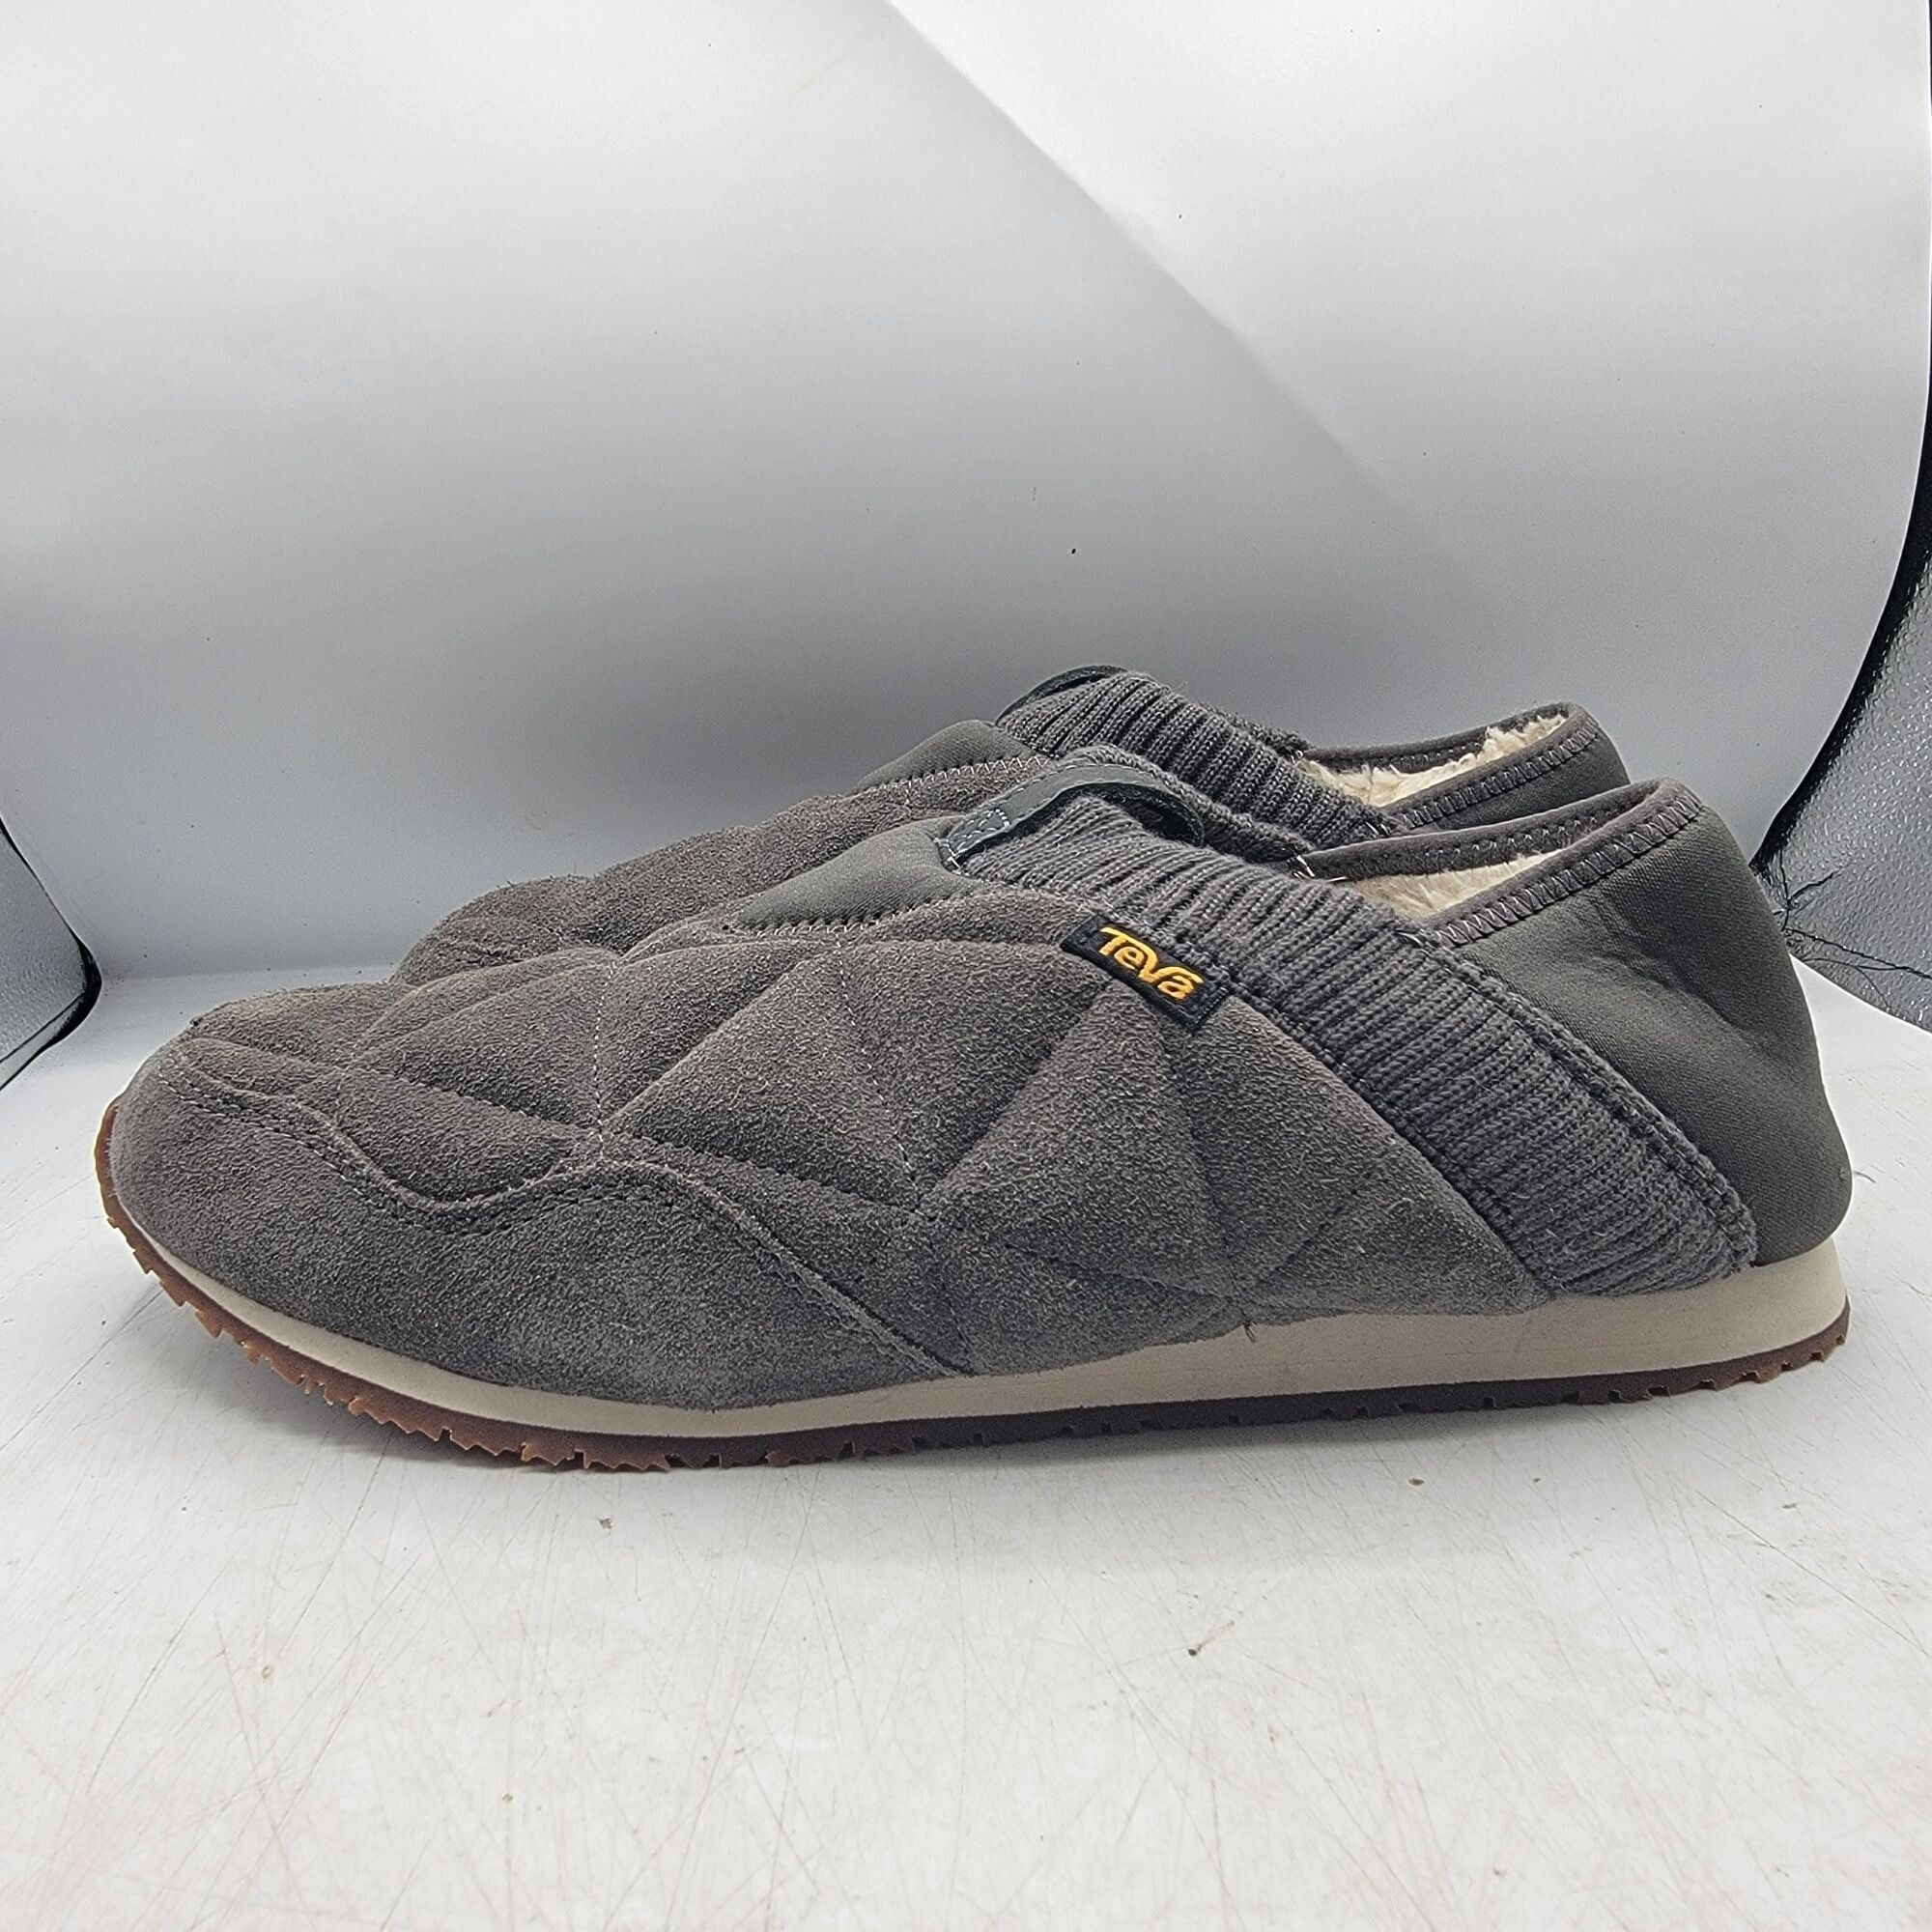 Teva Teva ReEmber Plushed Mens 11 Gray Slipper Shoes Comfort Line Size US 11 / EU 44 - 5 Thumbnail